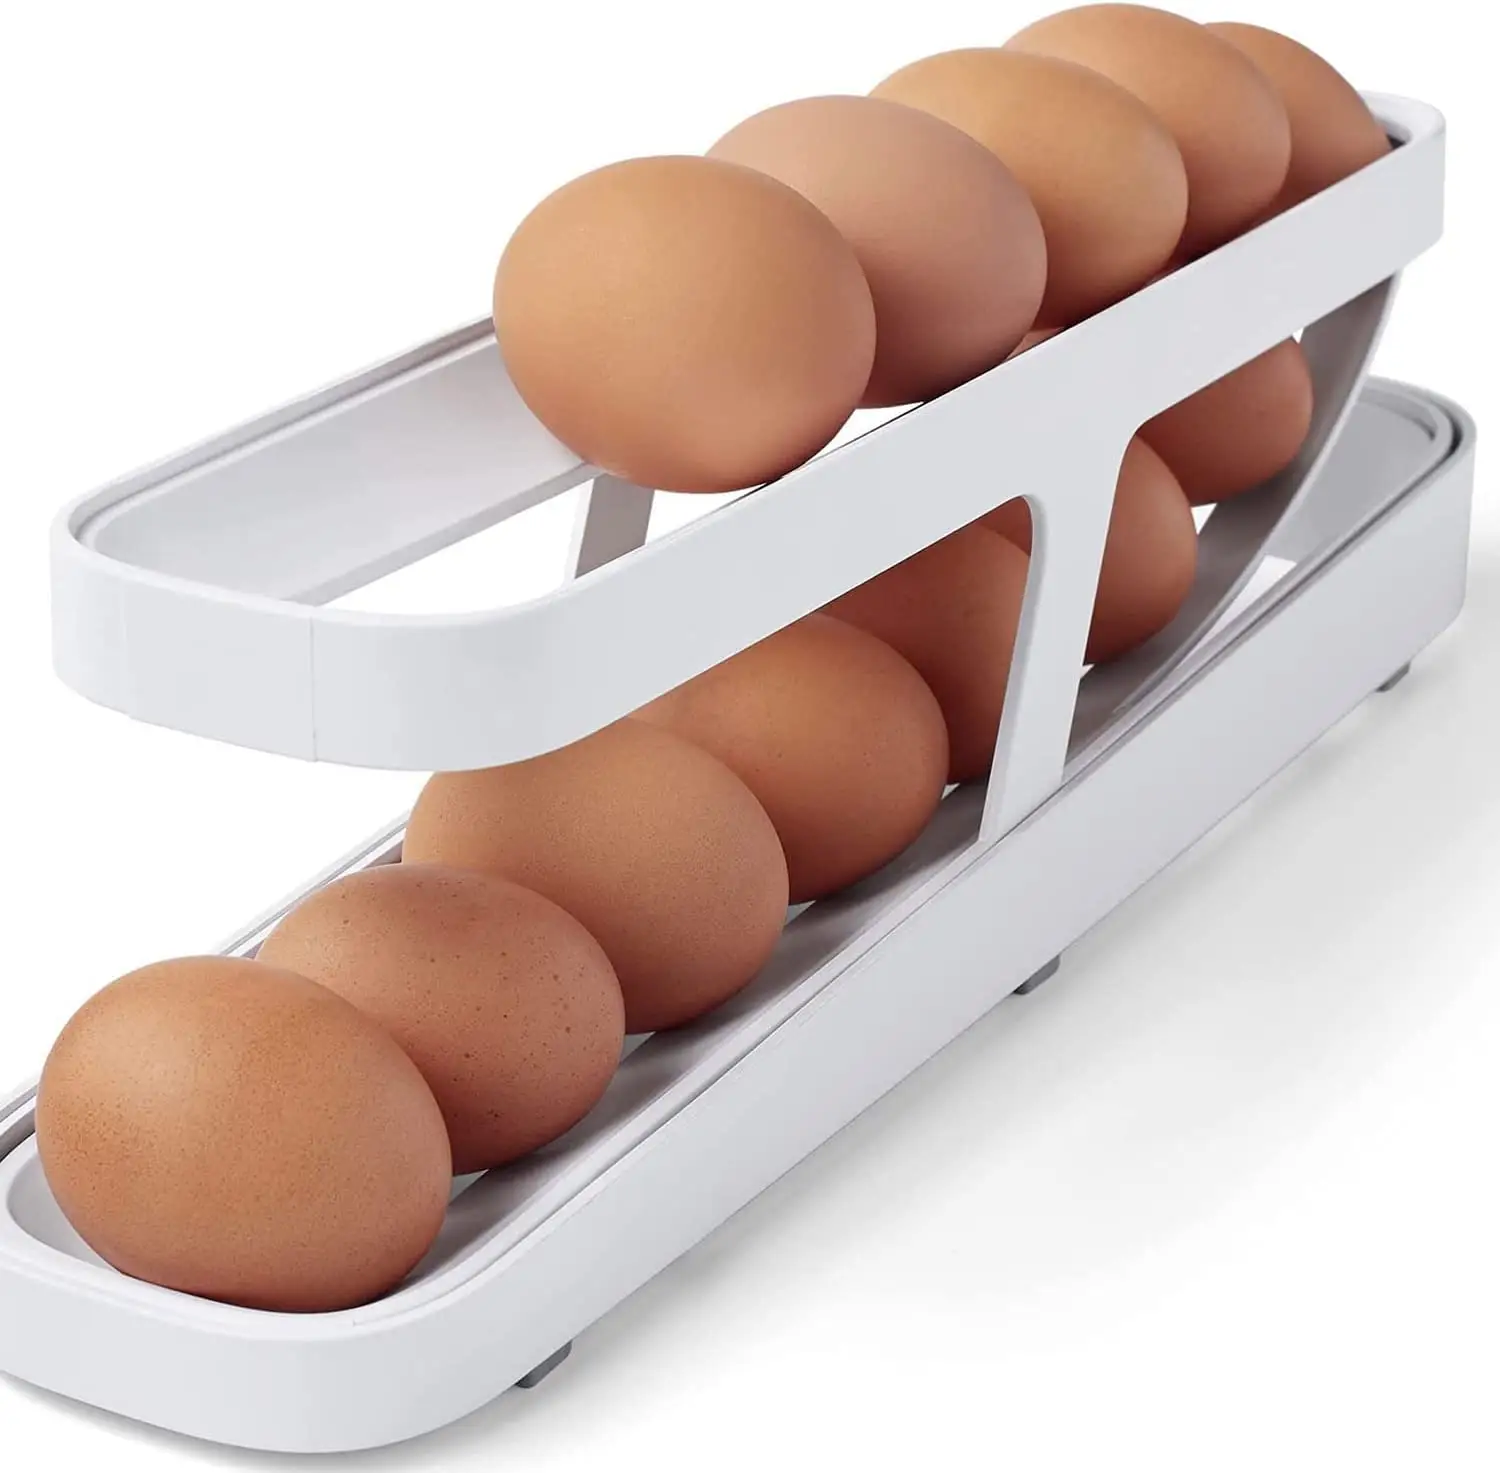 2023 Auto Rolling Egg Aufbewahrung behälter Eierhalter Tablett 2 Tier Egg Dispenser für Kühlschrank